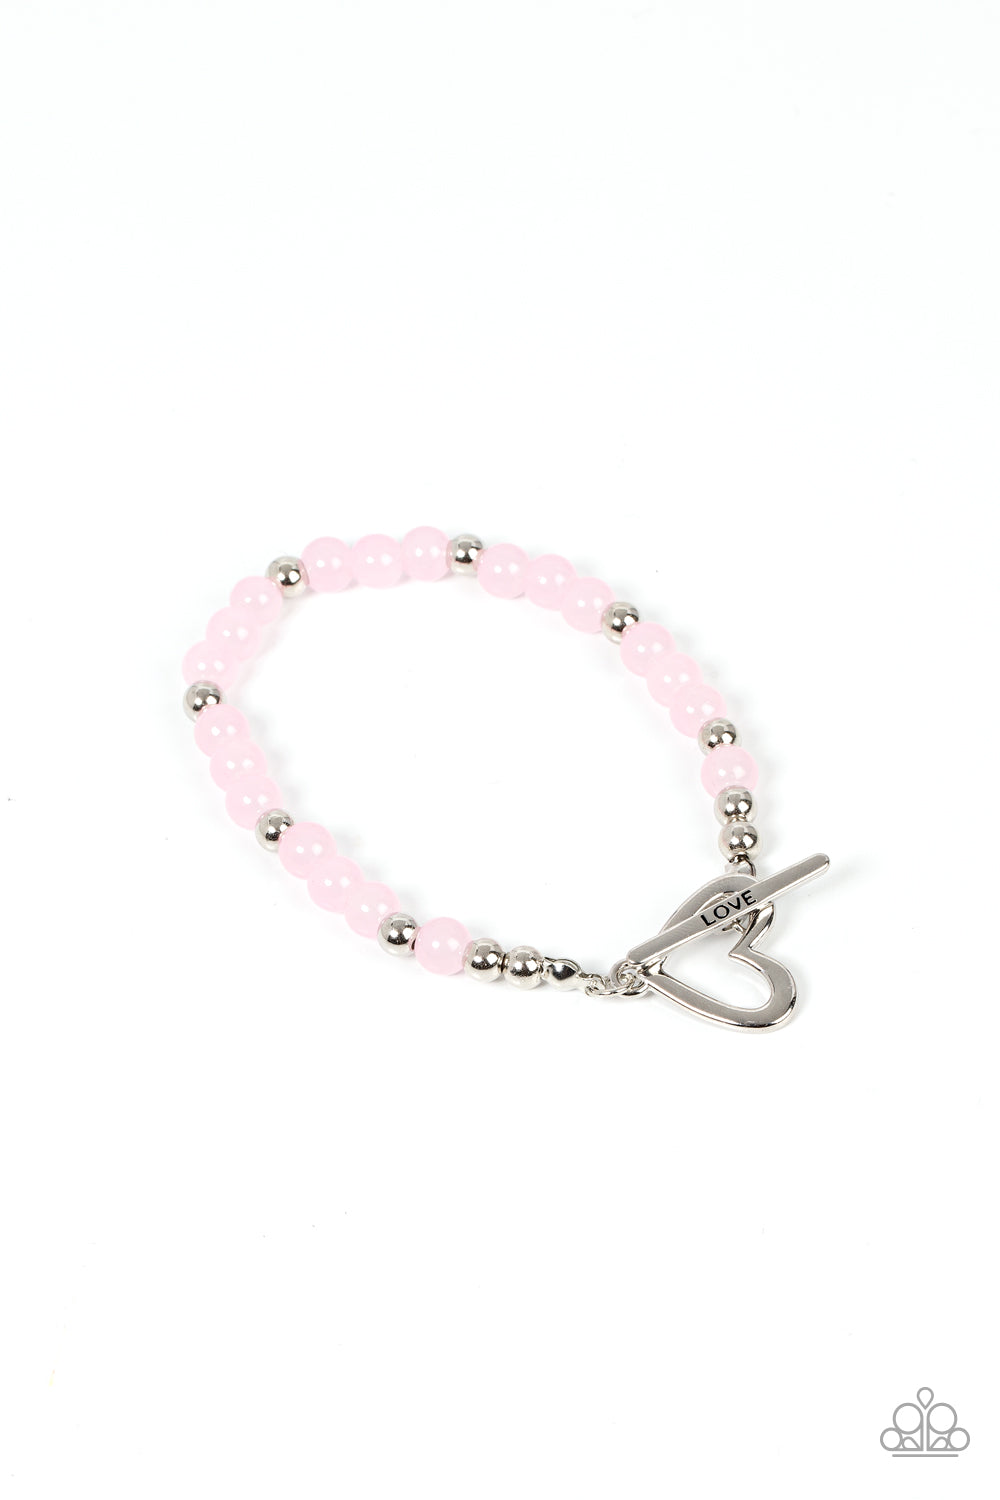 Following My Heart - Pink Paparazzi Bracelet